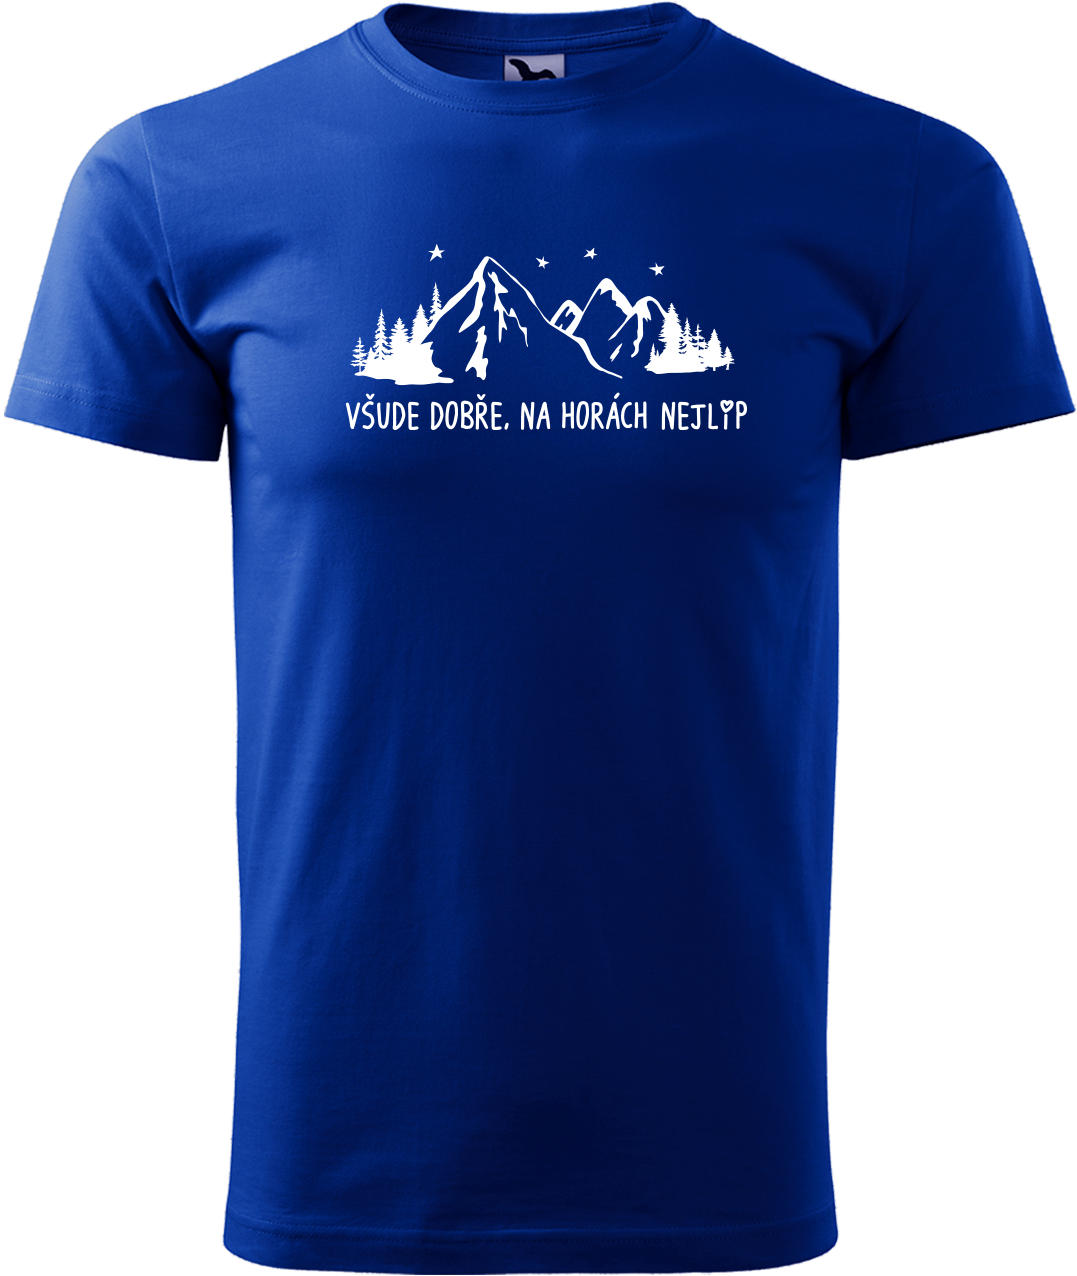 Pánské tričko na hory - Všude dobře, na horách nejlíp Velikost: L, Barva: Královská modrá (05)